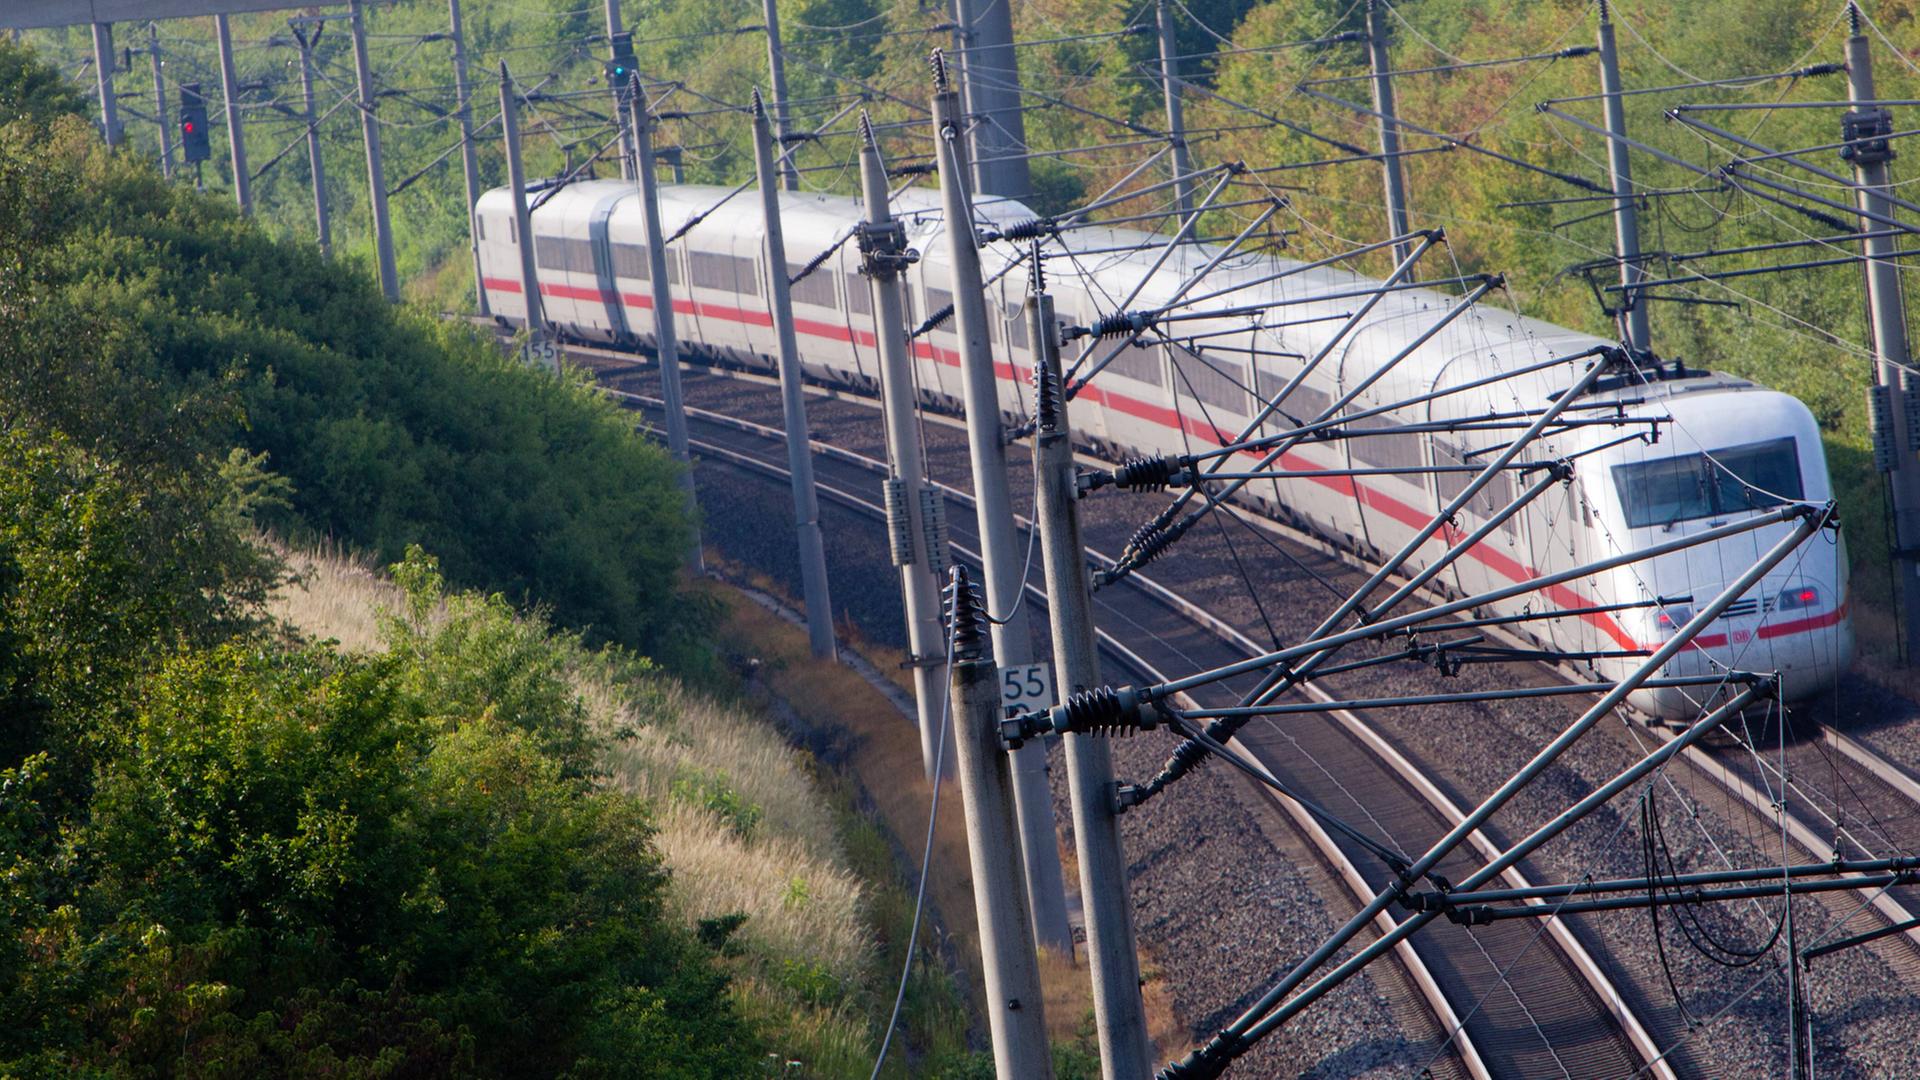 Ein Intercity Express Zug der Deutschen Bahn auf Fahrt in Hessen, im Vordergrund Masten und Oberleitungen.